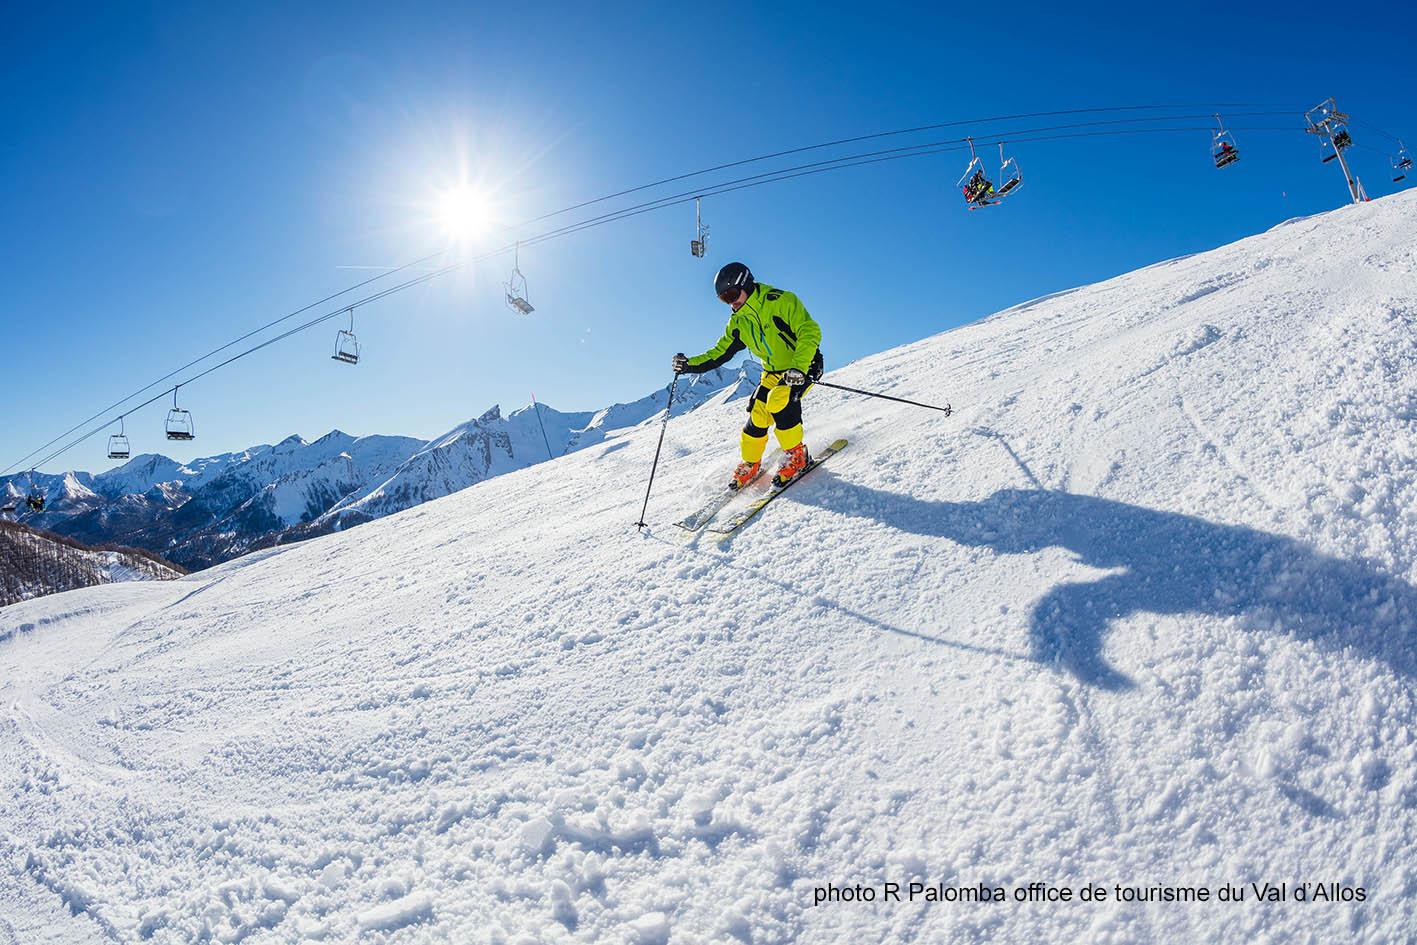 osrodek narciarski Val d'Allos